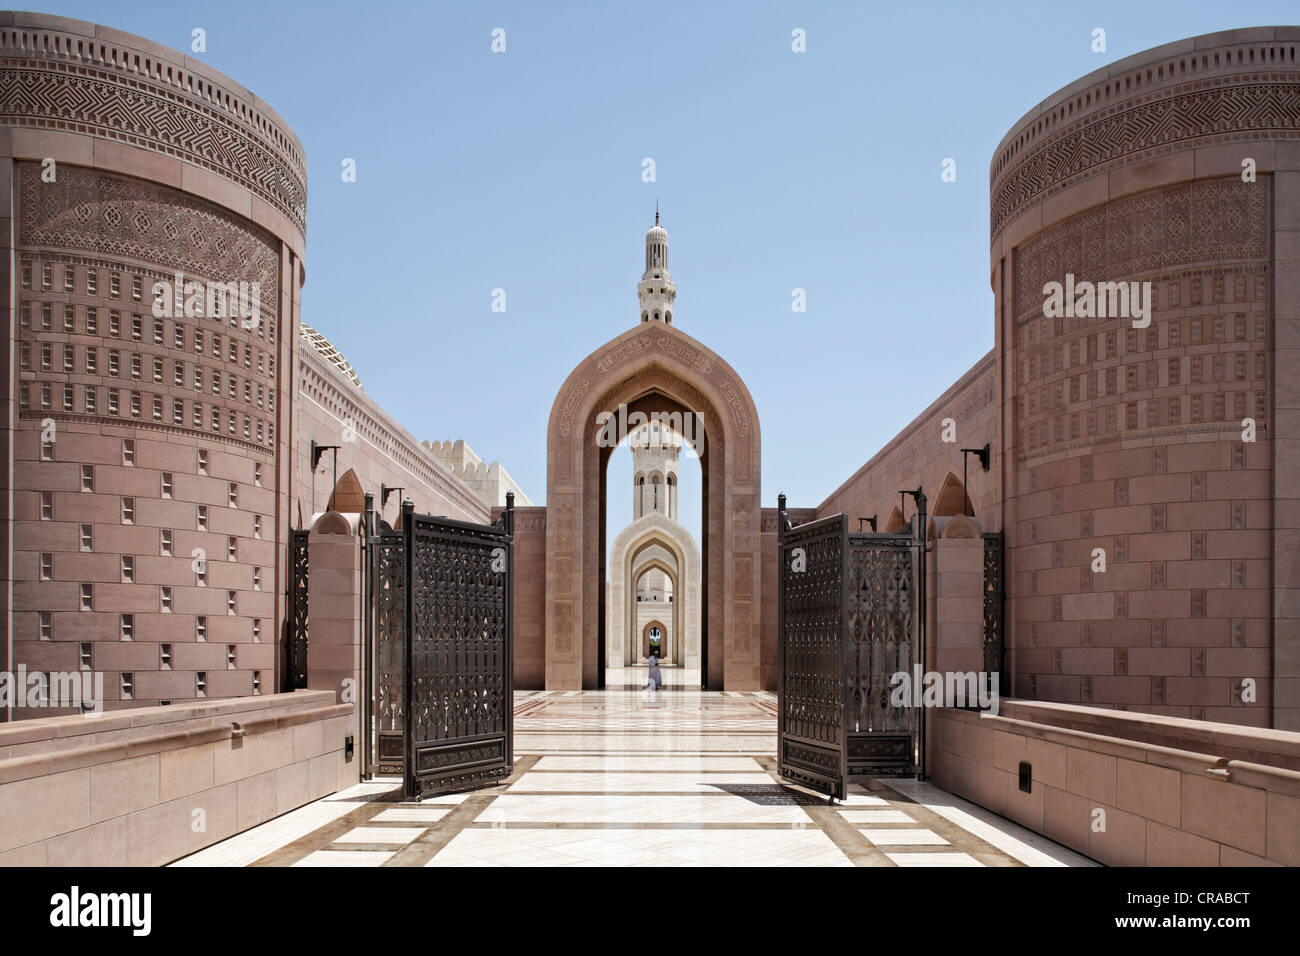 Portale, gate, grande piazza con arco a sesto acuto, cancelli, minareto, Sultan Qaboos Grande Moschea, Moscato di capitale, il sultanato di Oman Foto Stock